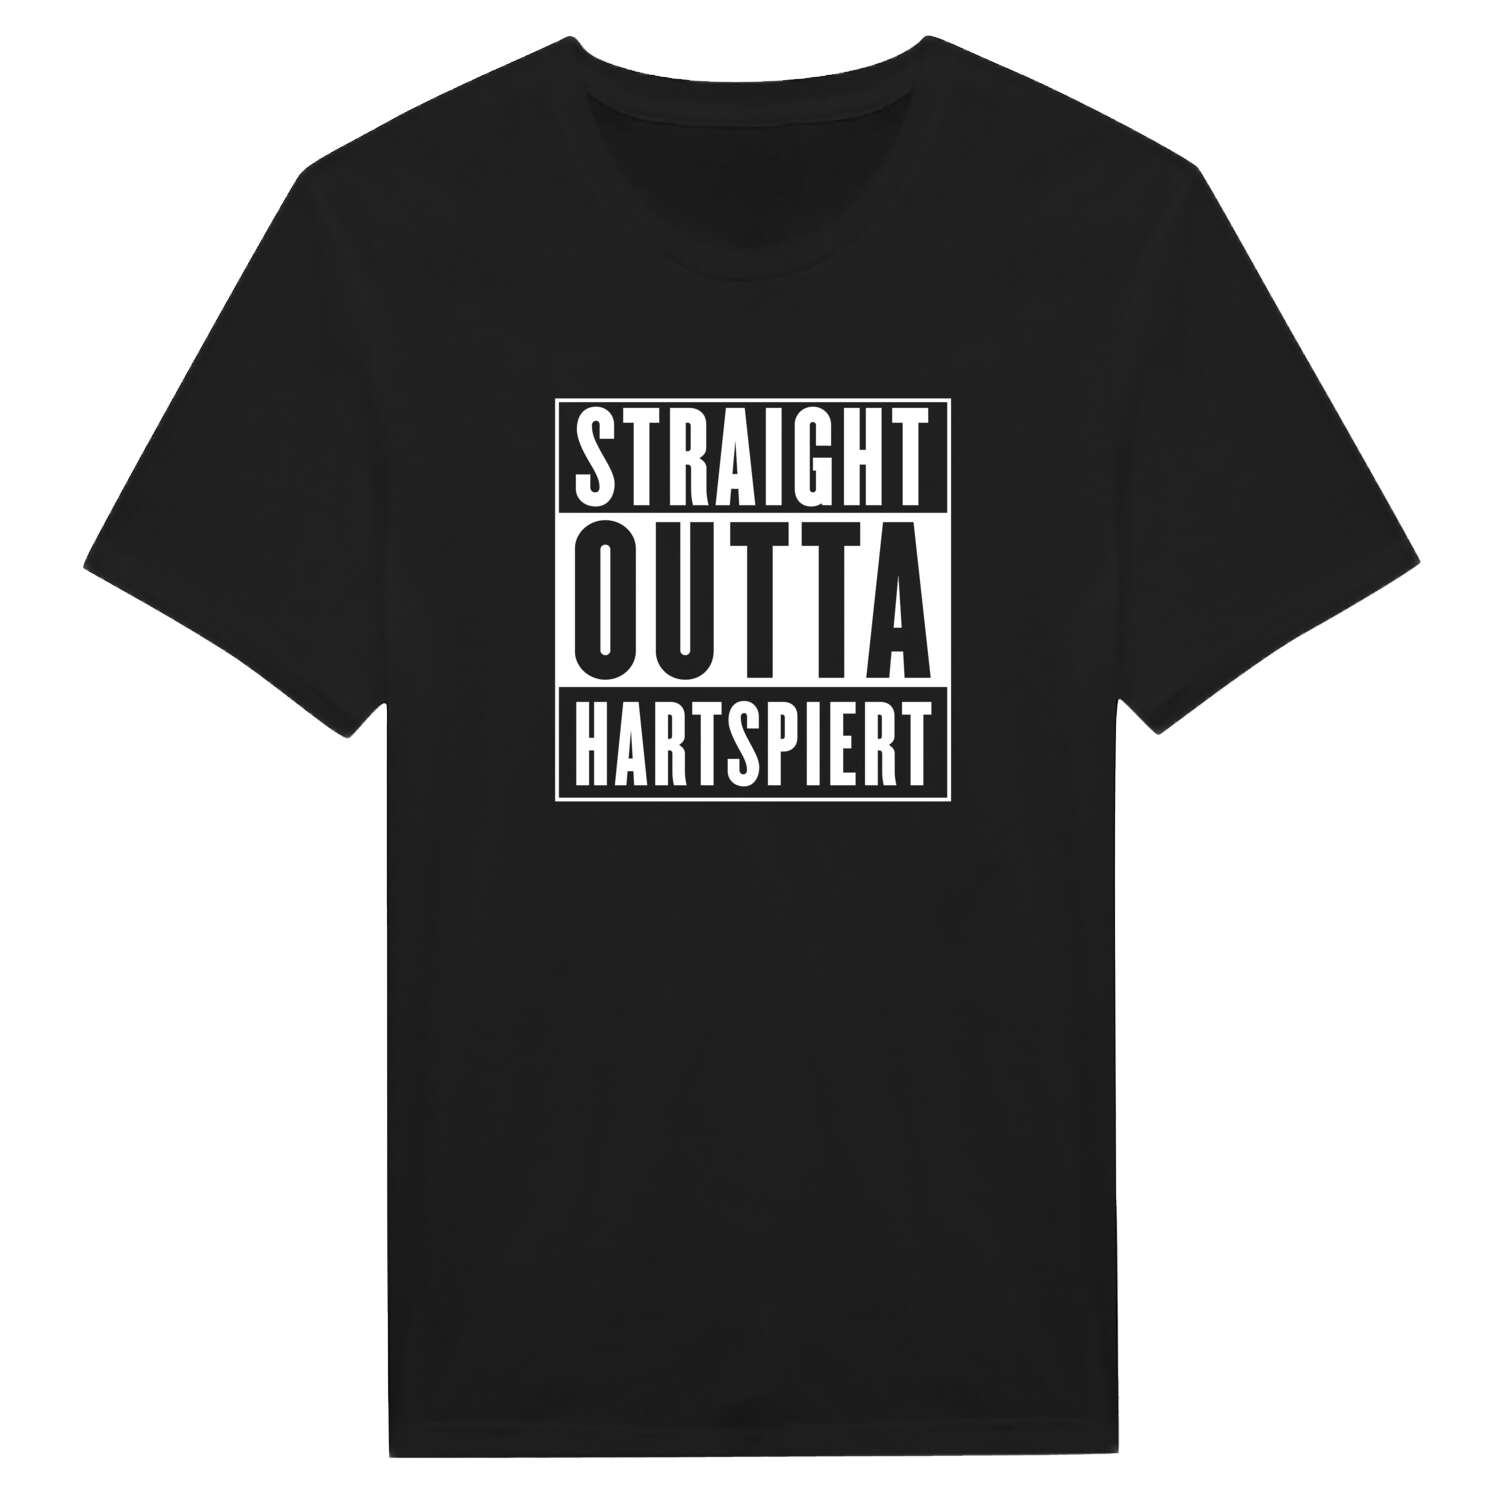 Hartspiert T-Shirt »Straight Outta«